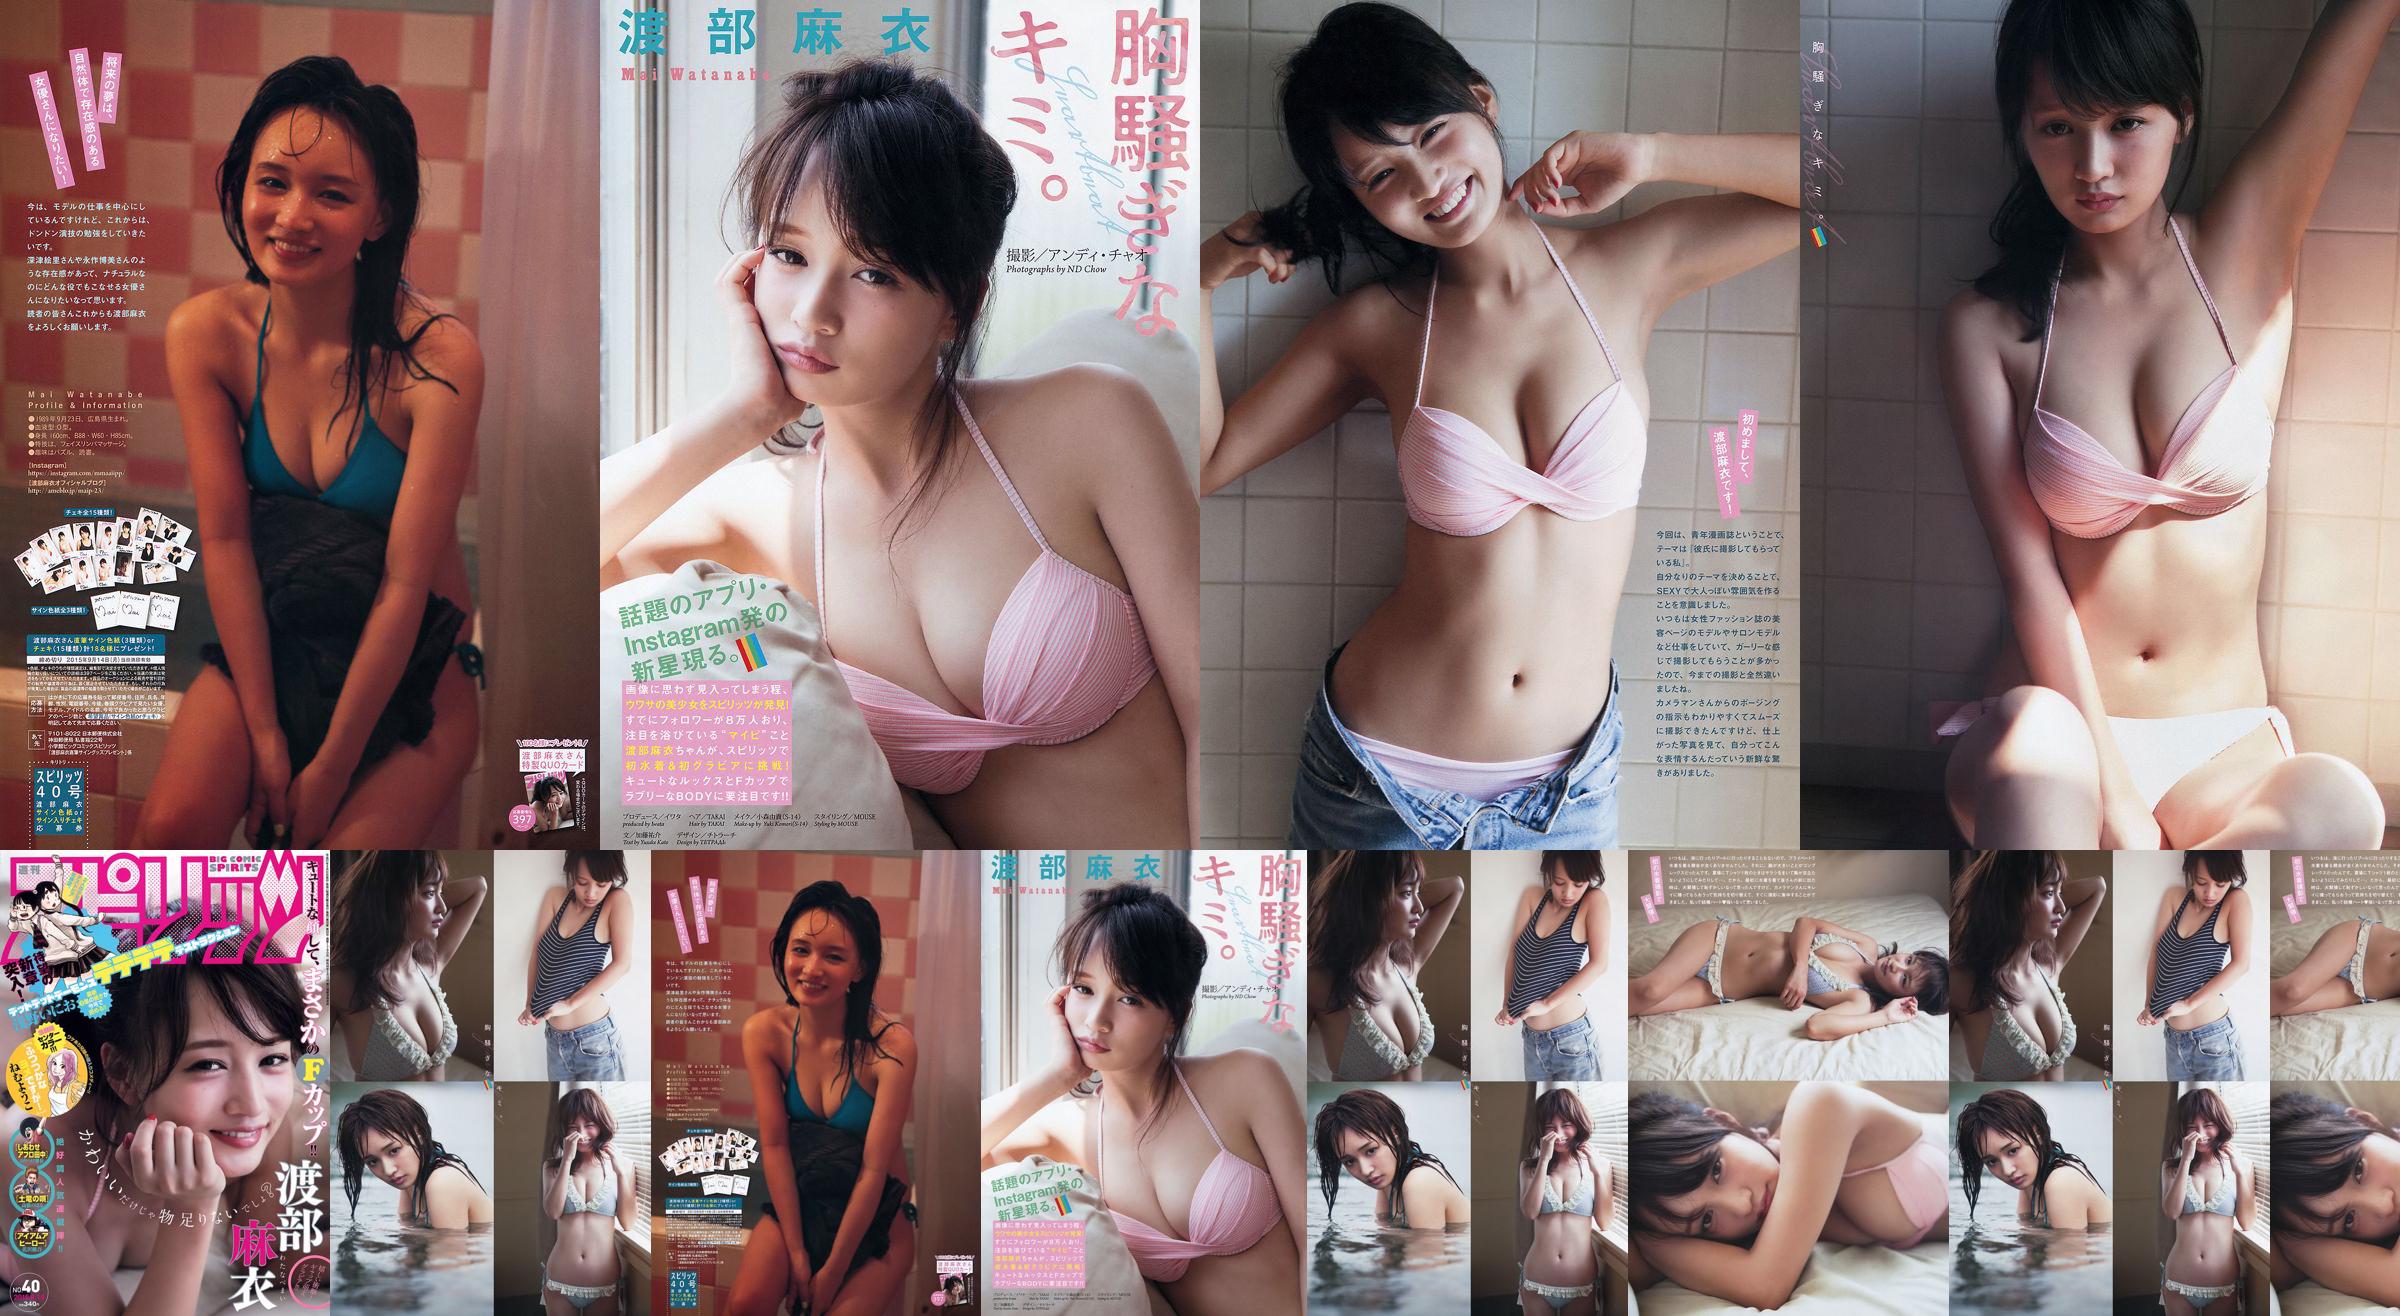 [Weekly Big Comic Spirits] Watanabe Mai 2015 No.40 Photo Magazine No.032387 Página 1